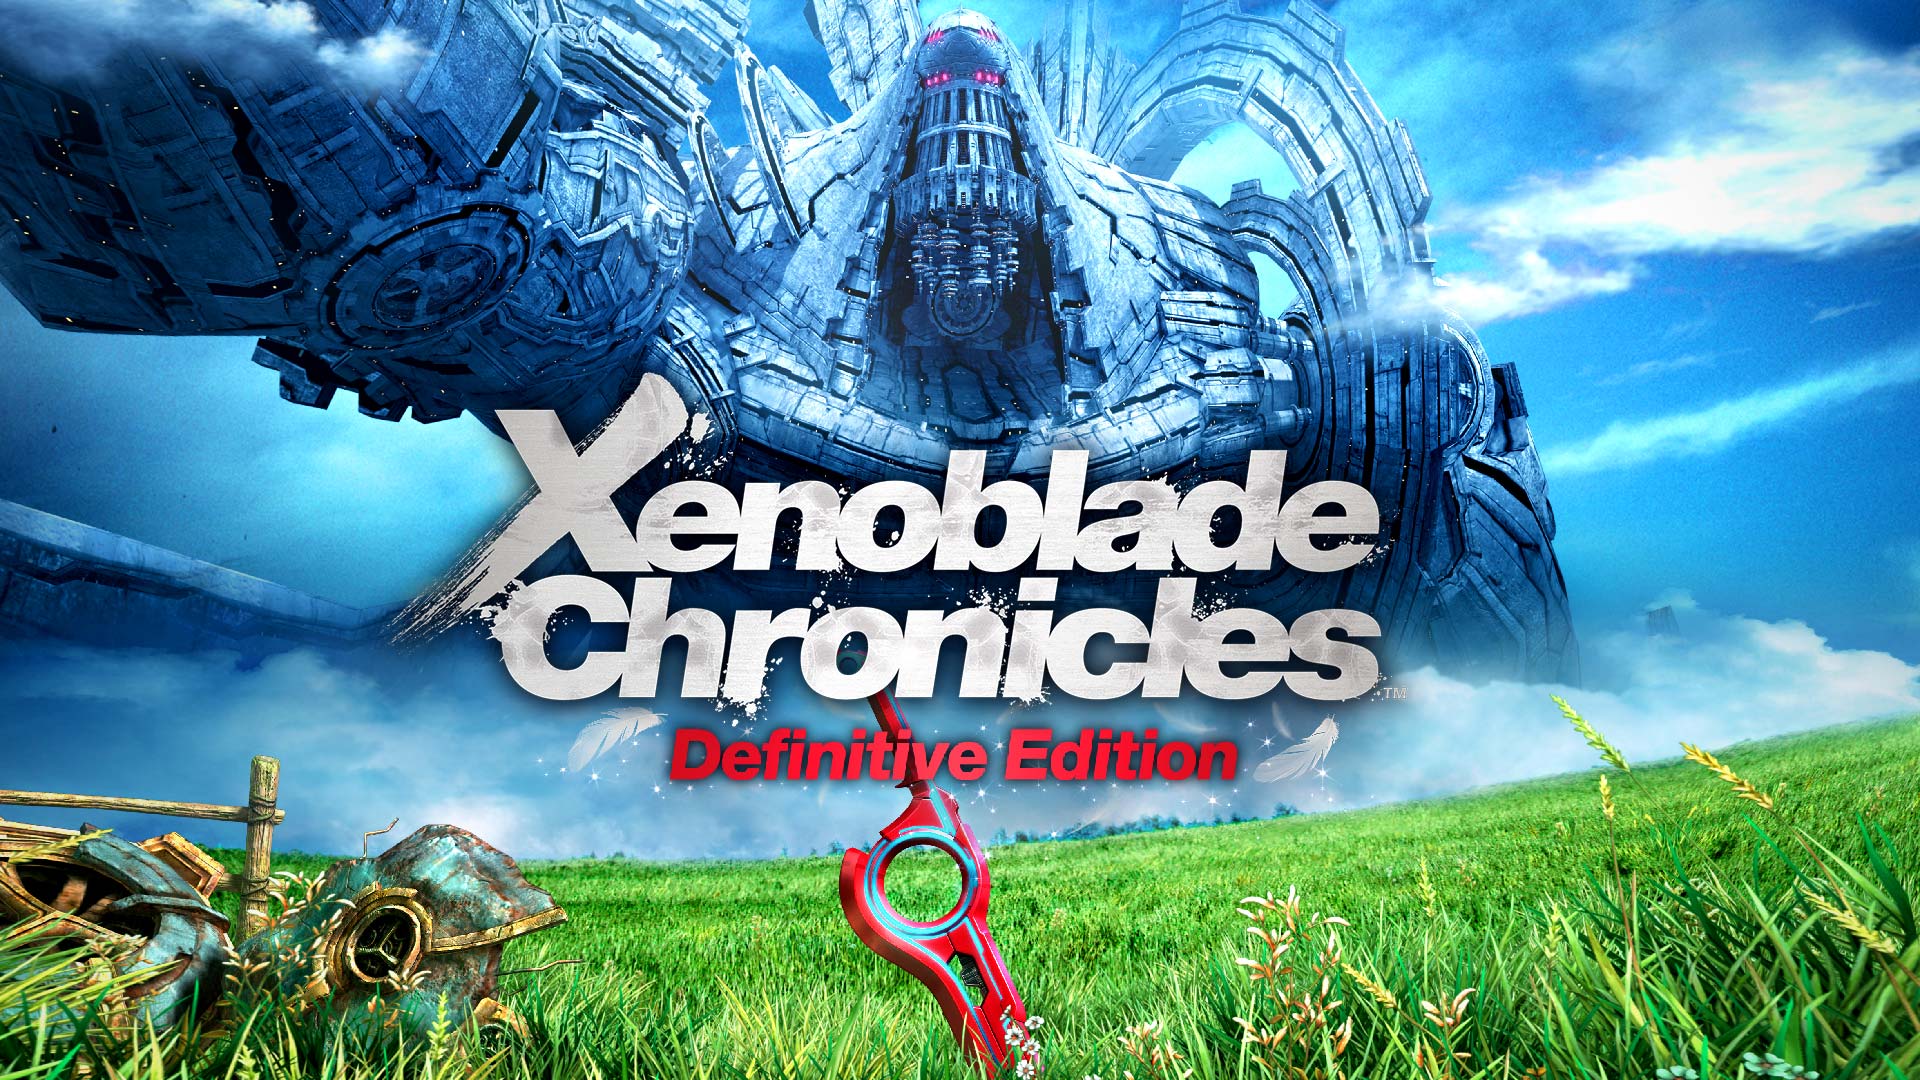 لعبة Xenoblade Chronicles تتصدر مبيعات الولايات المتحدة